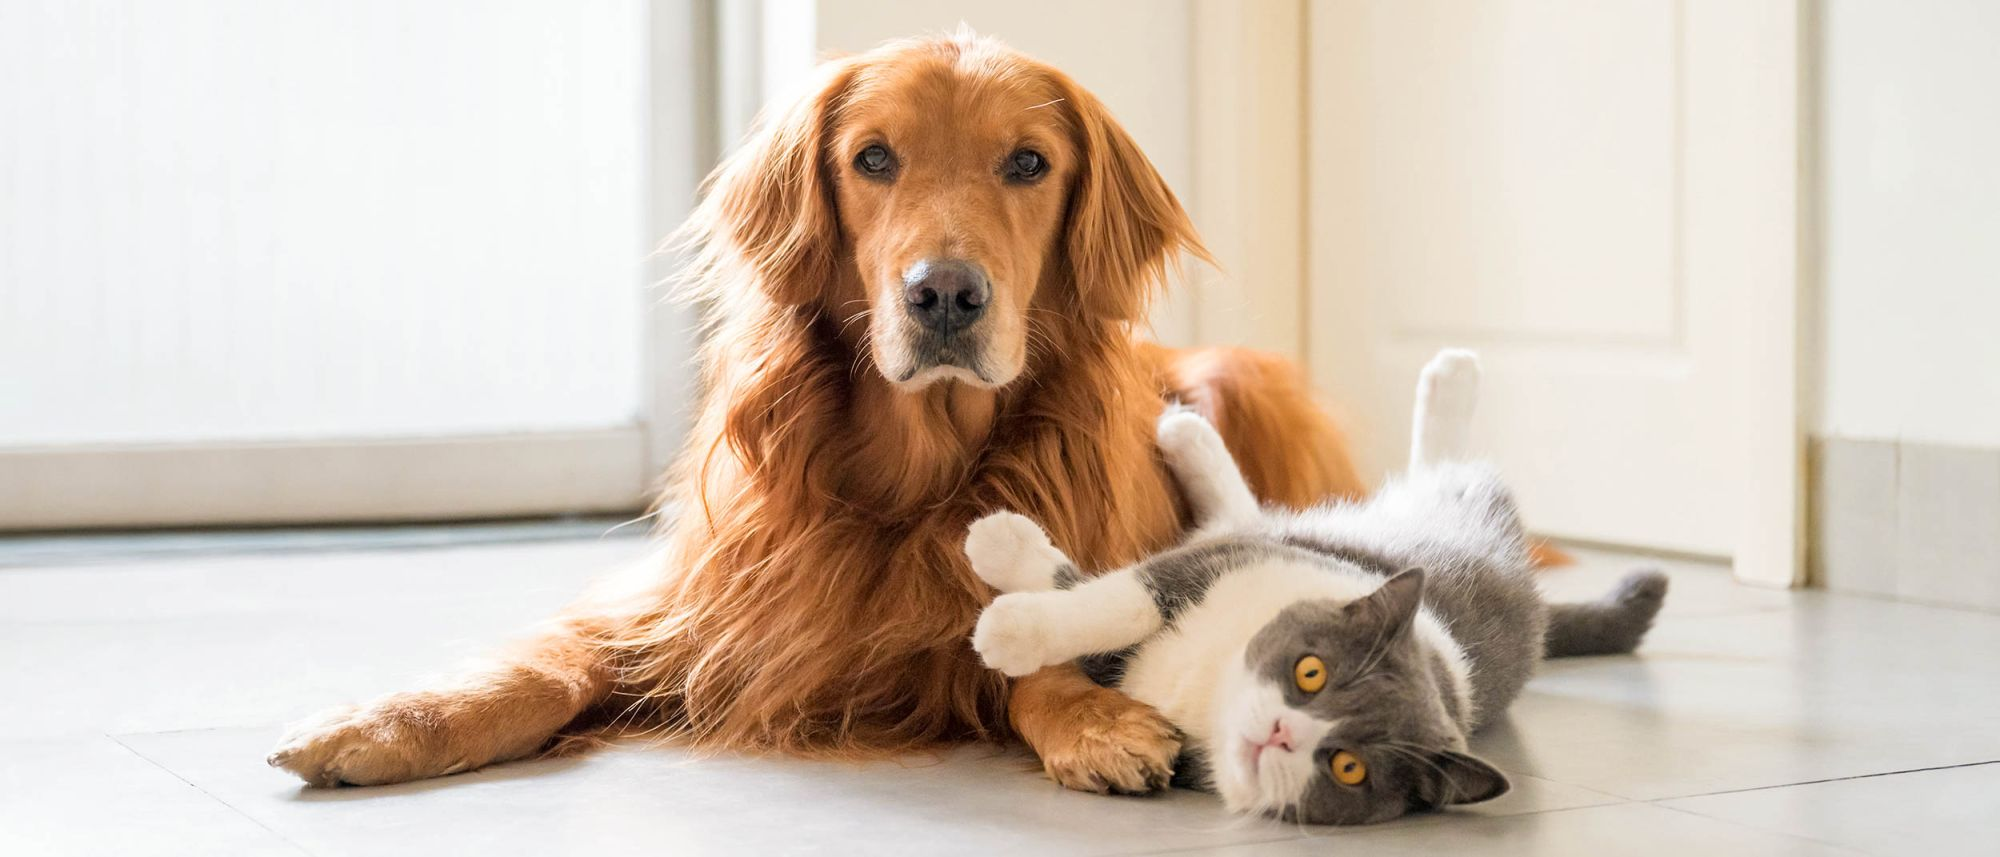 Voksen kat og hund, som ligger sammen indendørs på et køkkengulv